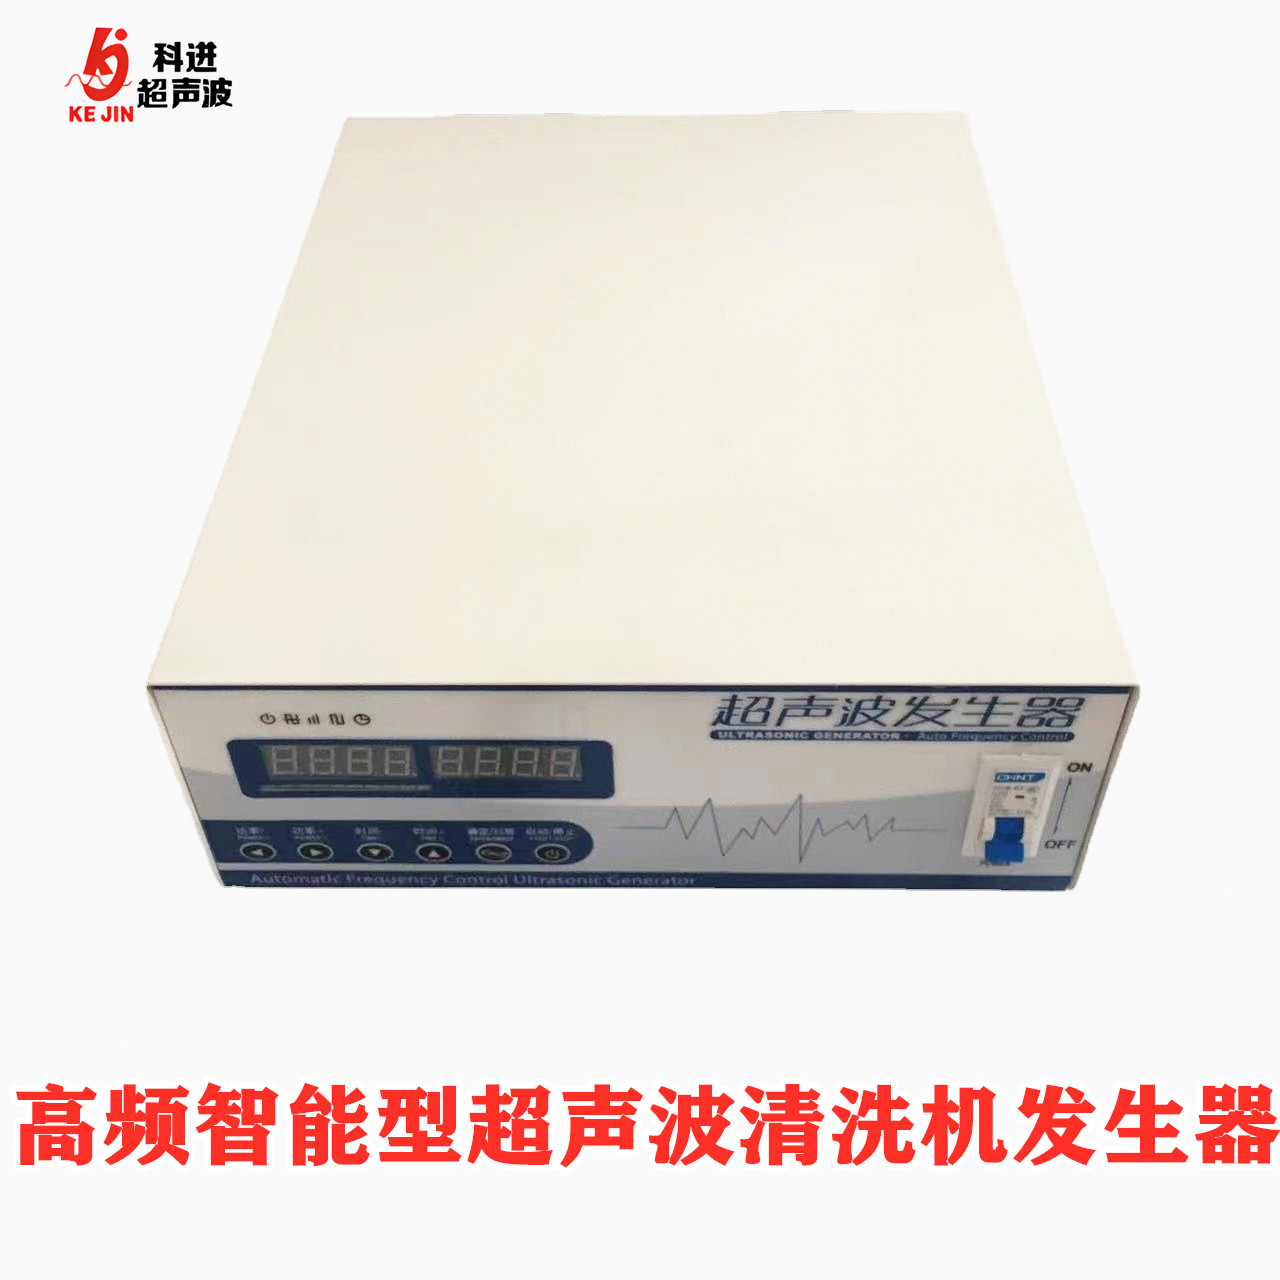 KJF2高频智能超声波清洗机电源发生器配套 工业超声清洗主机 电箱 广州发货  